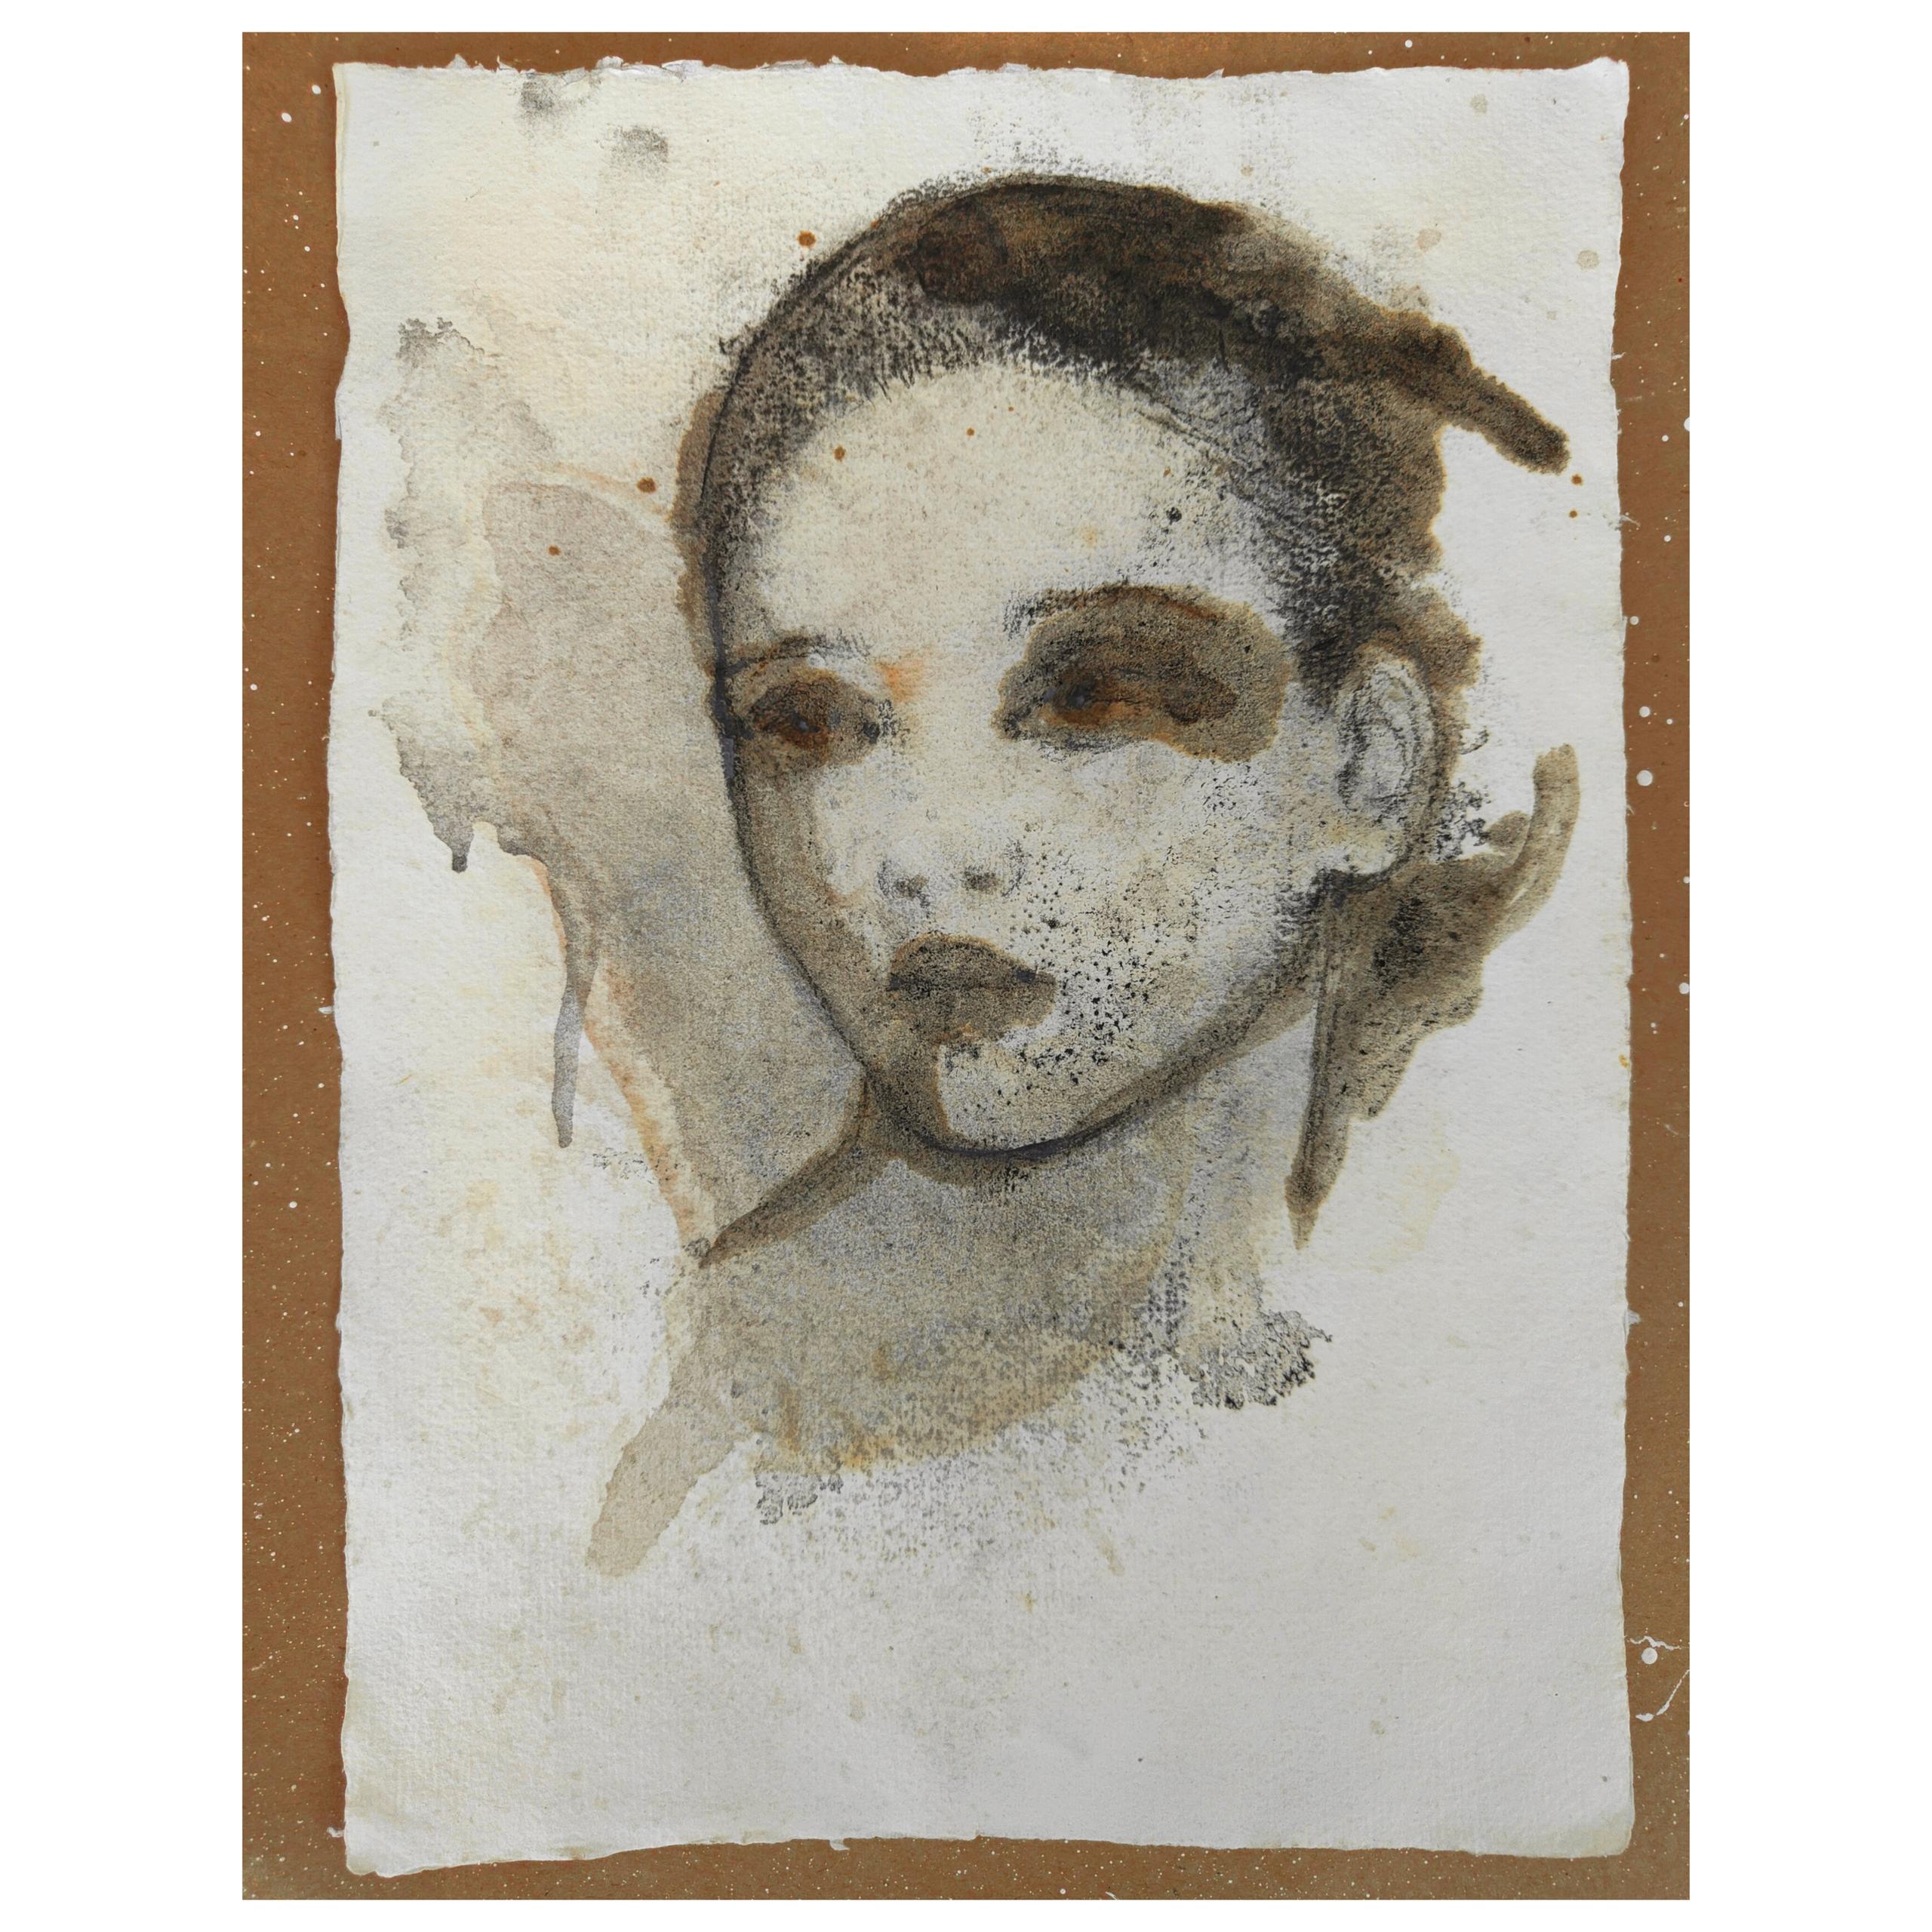 Simona Fedele Artista, piccole carte in tecnica mista disponibili, mostra d'arte, sanguigna, carboncino, olio e pastelli